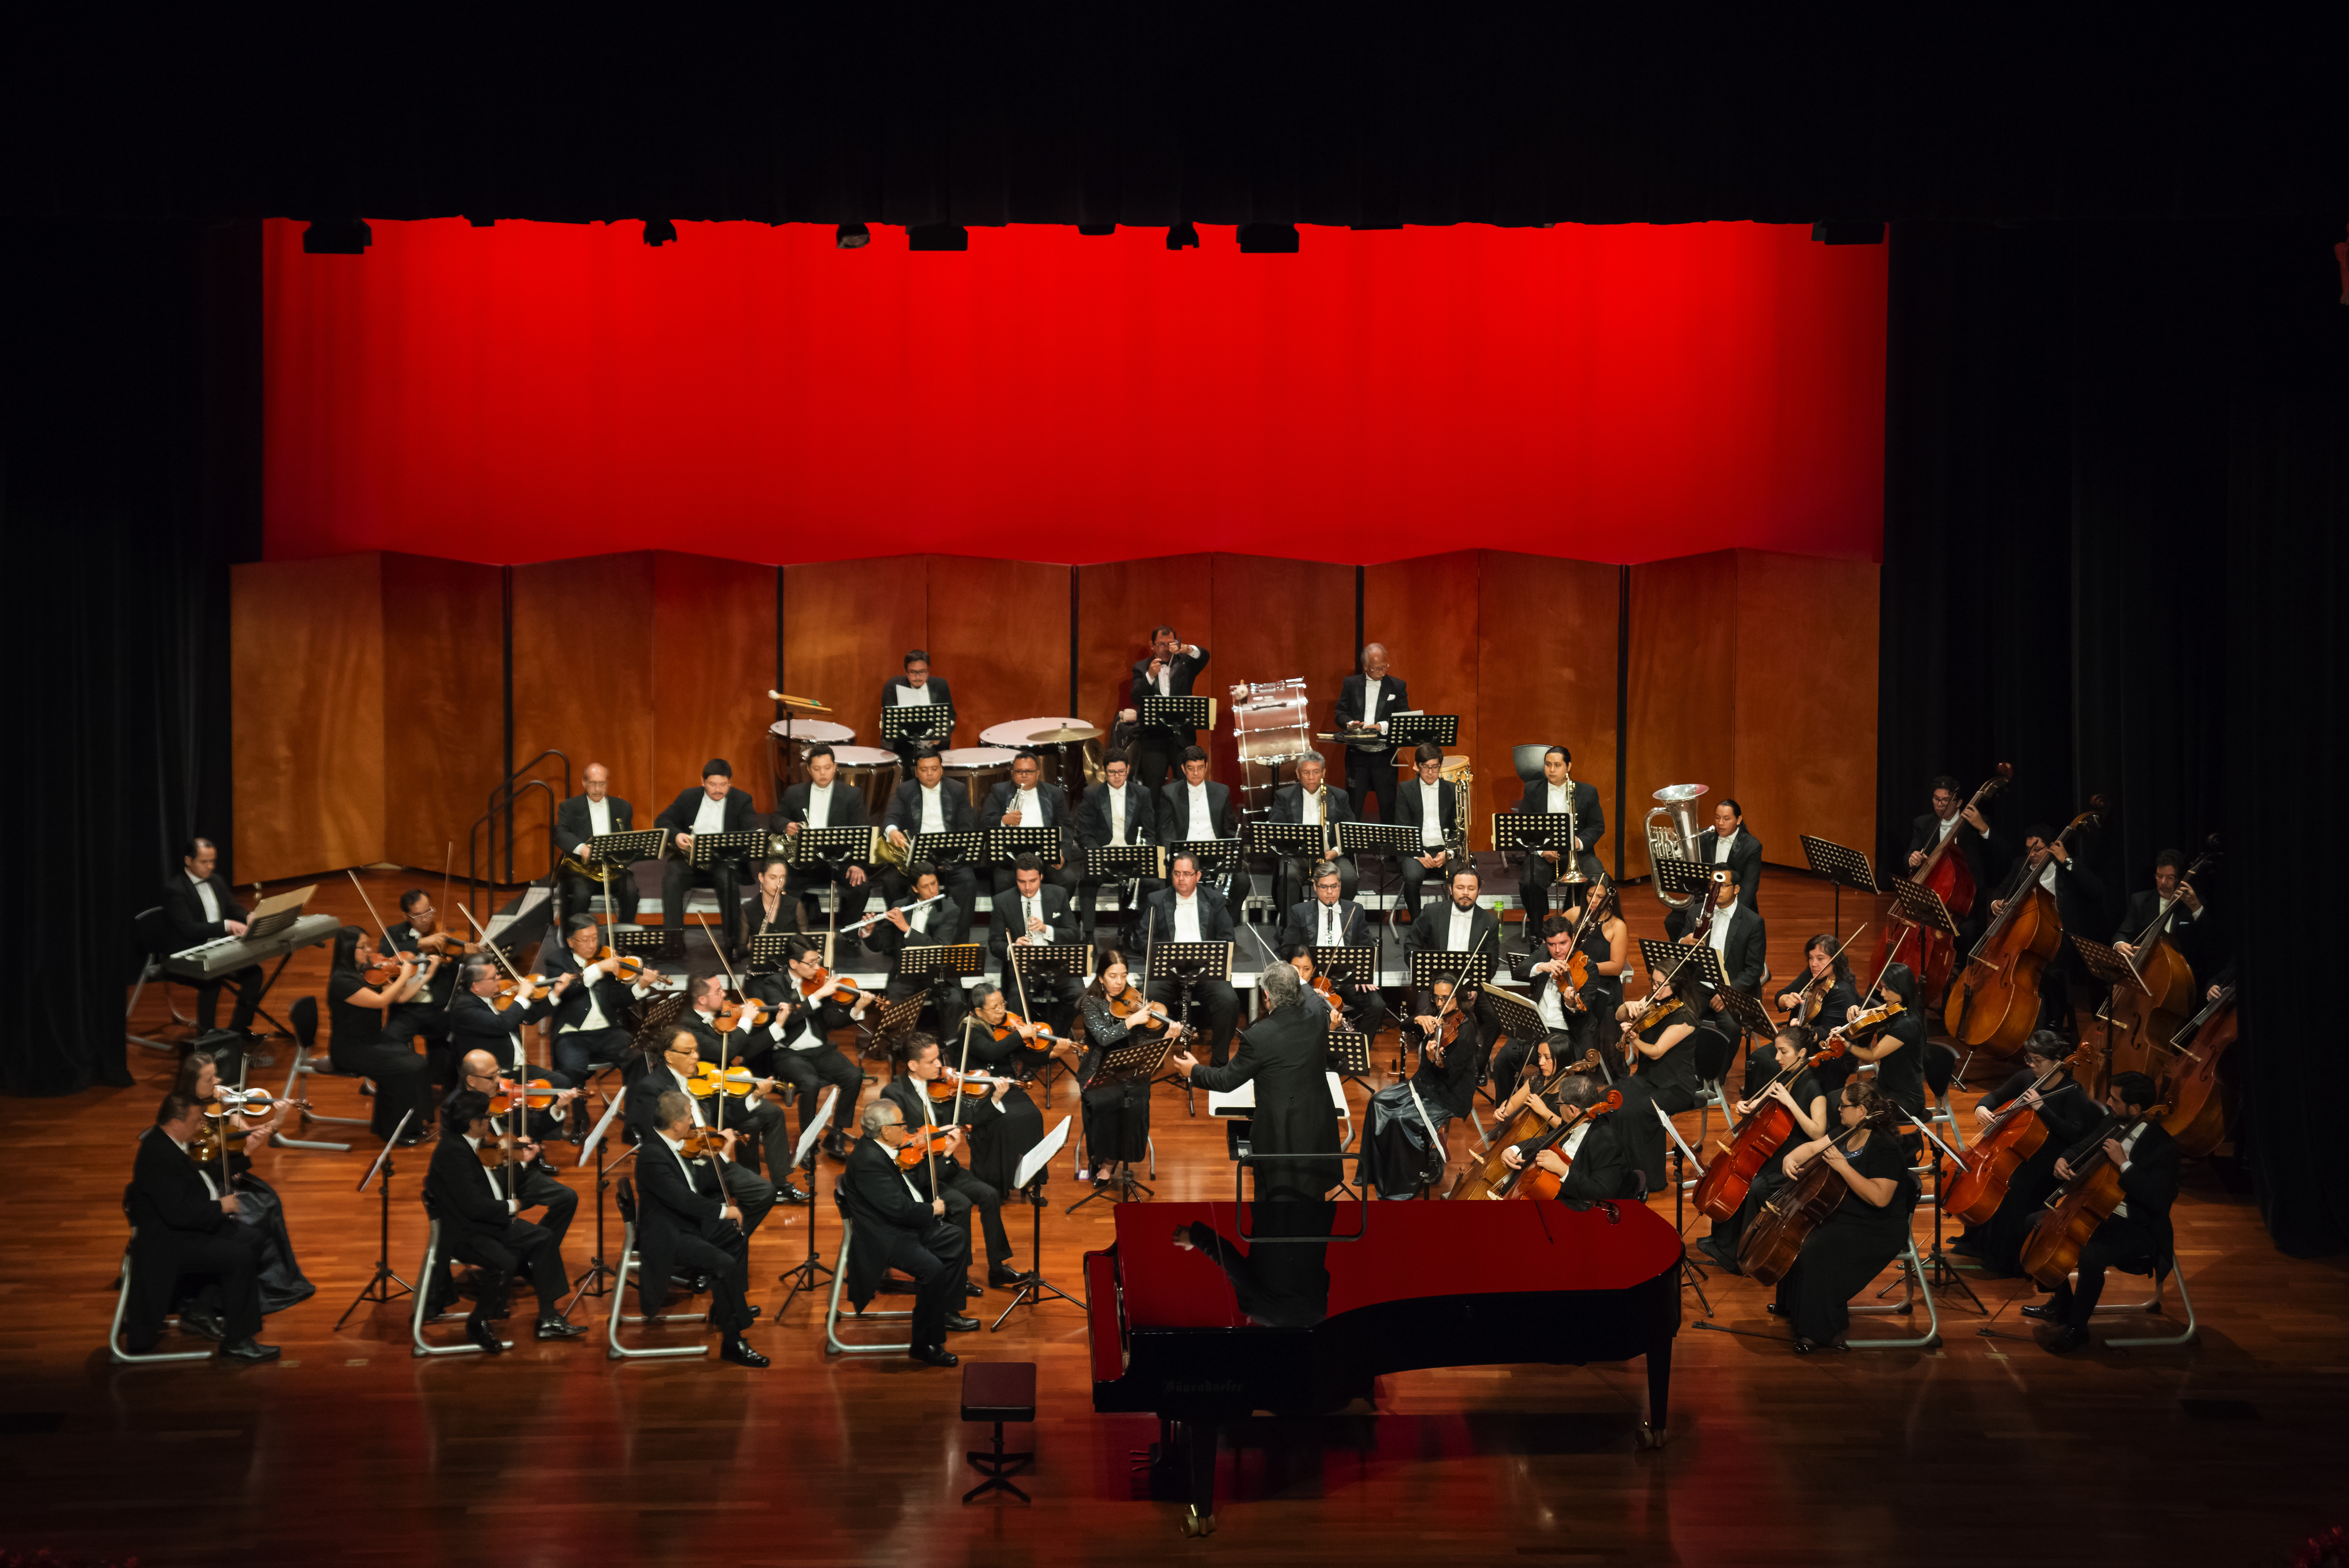 La Orquesta Festival, originaria de Guatemala ha sido parte del engranaje del Festival Bravissimo durante los últimos años. (Foto Prensa Libre: Cortesía Departamento de Artes Escénicas UFM)